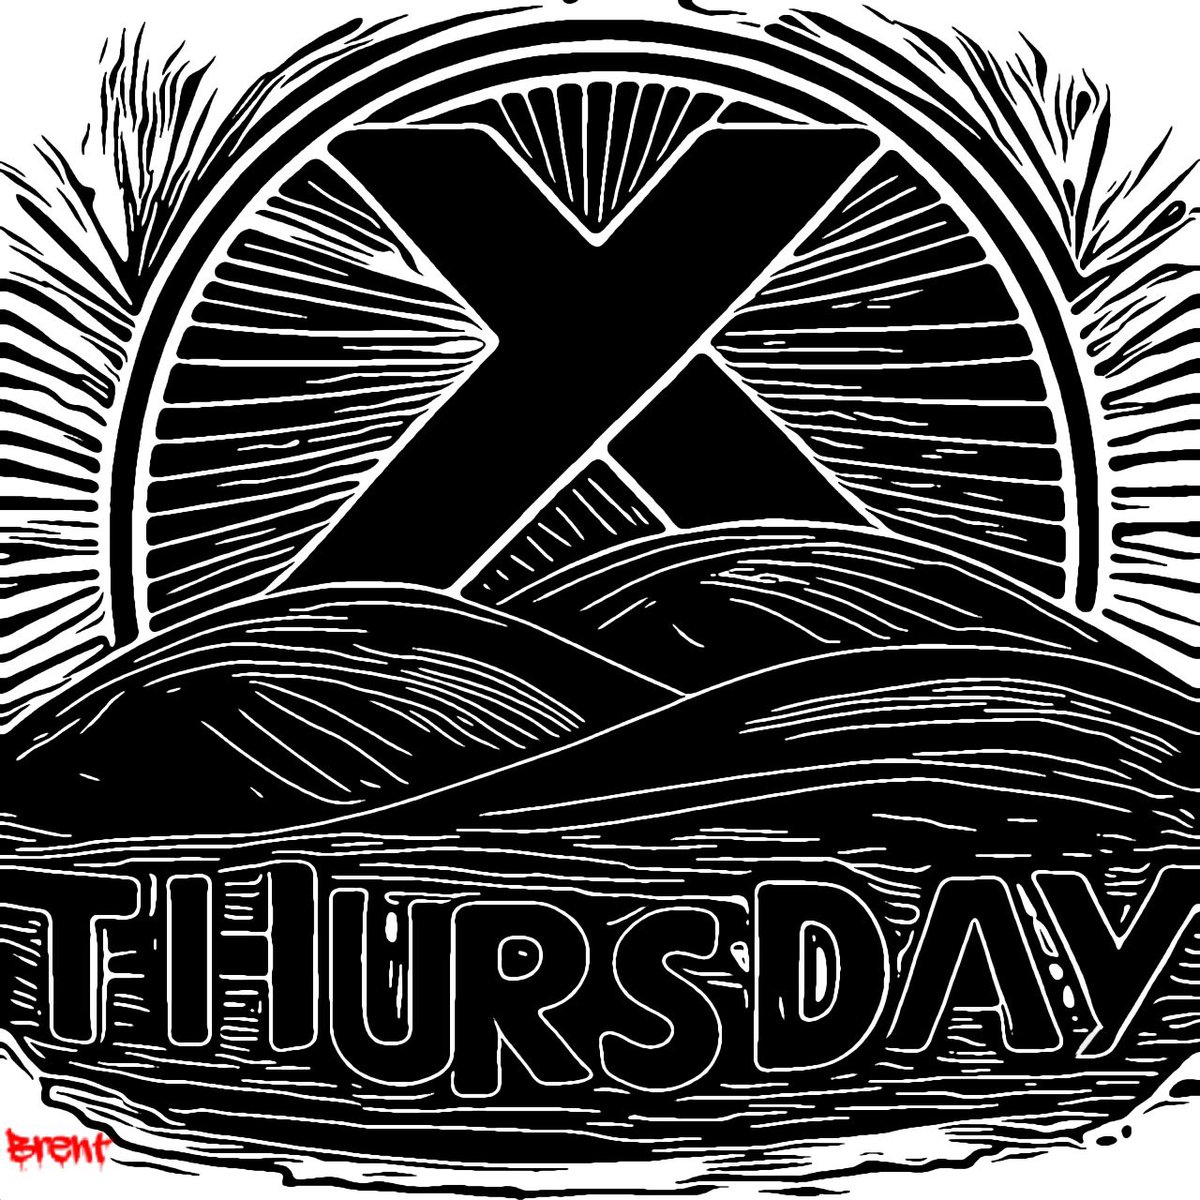 Happy Thursday on X.